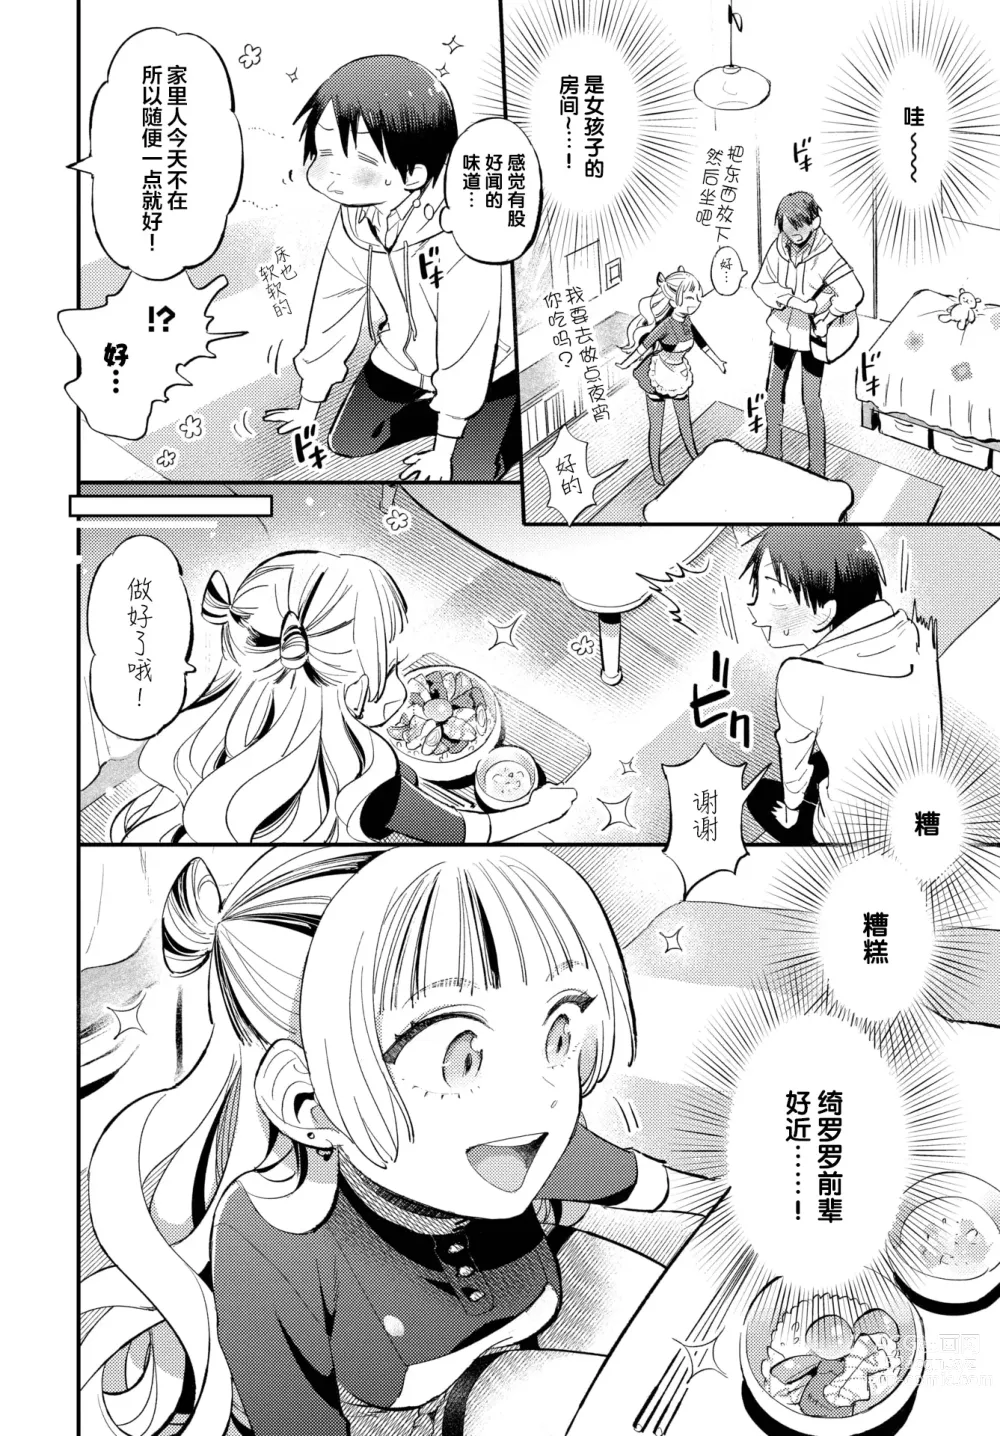 Page 4 of manga Senpai no Toriko